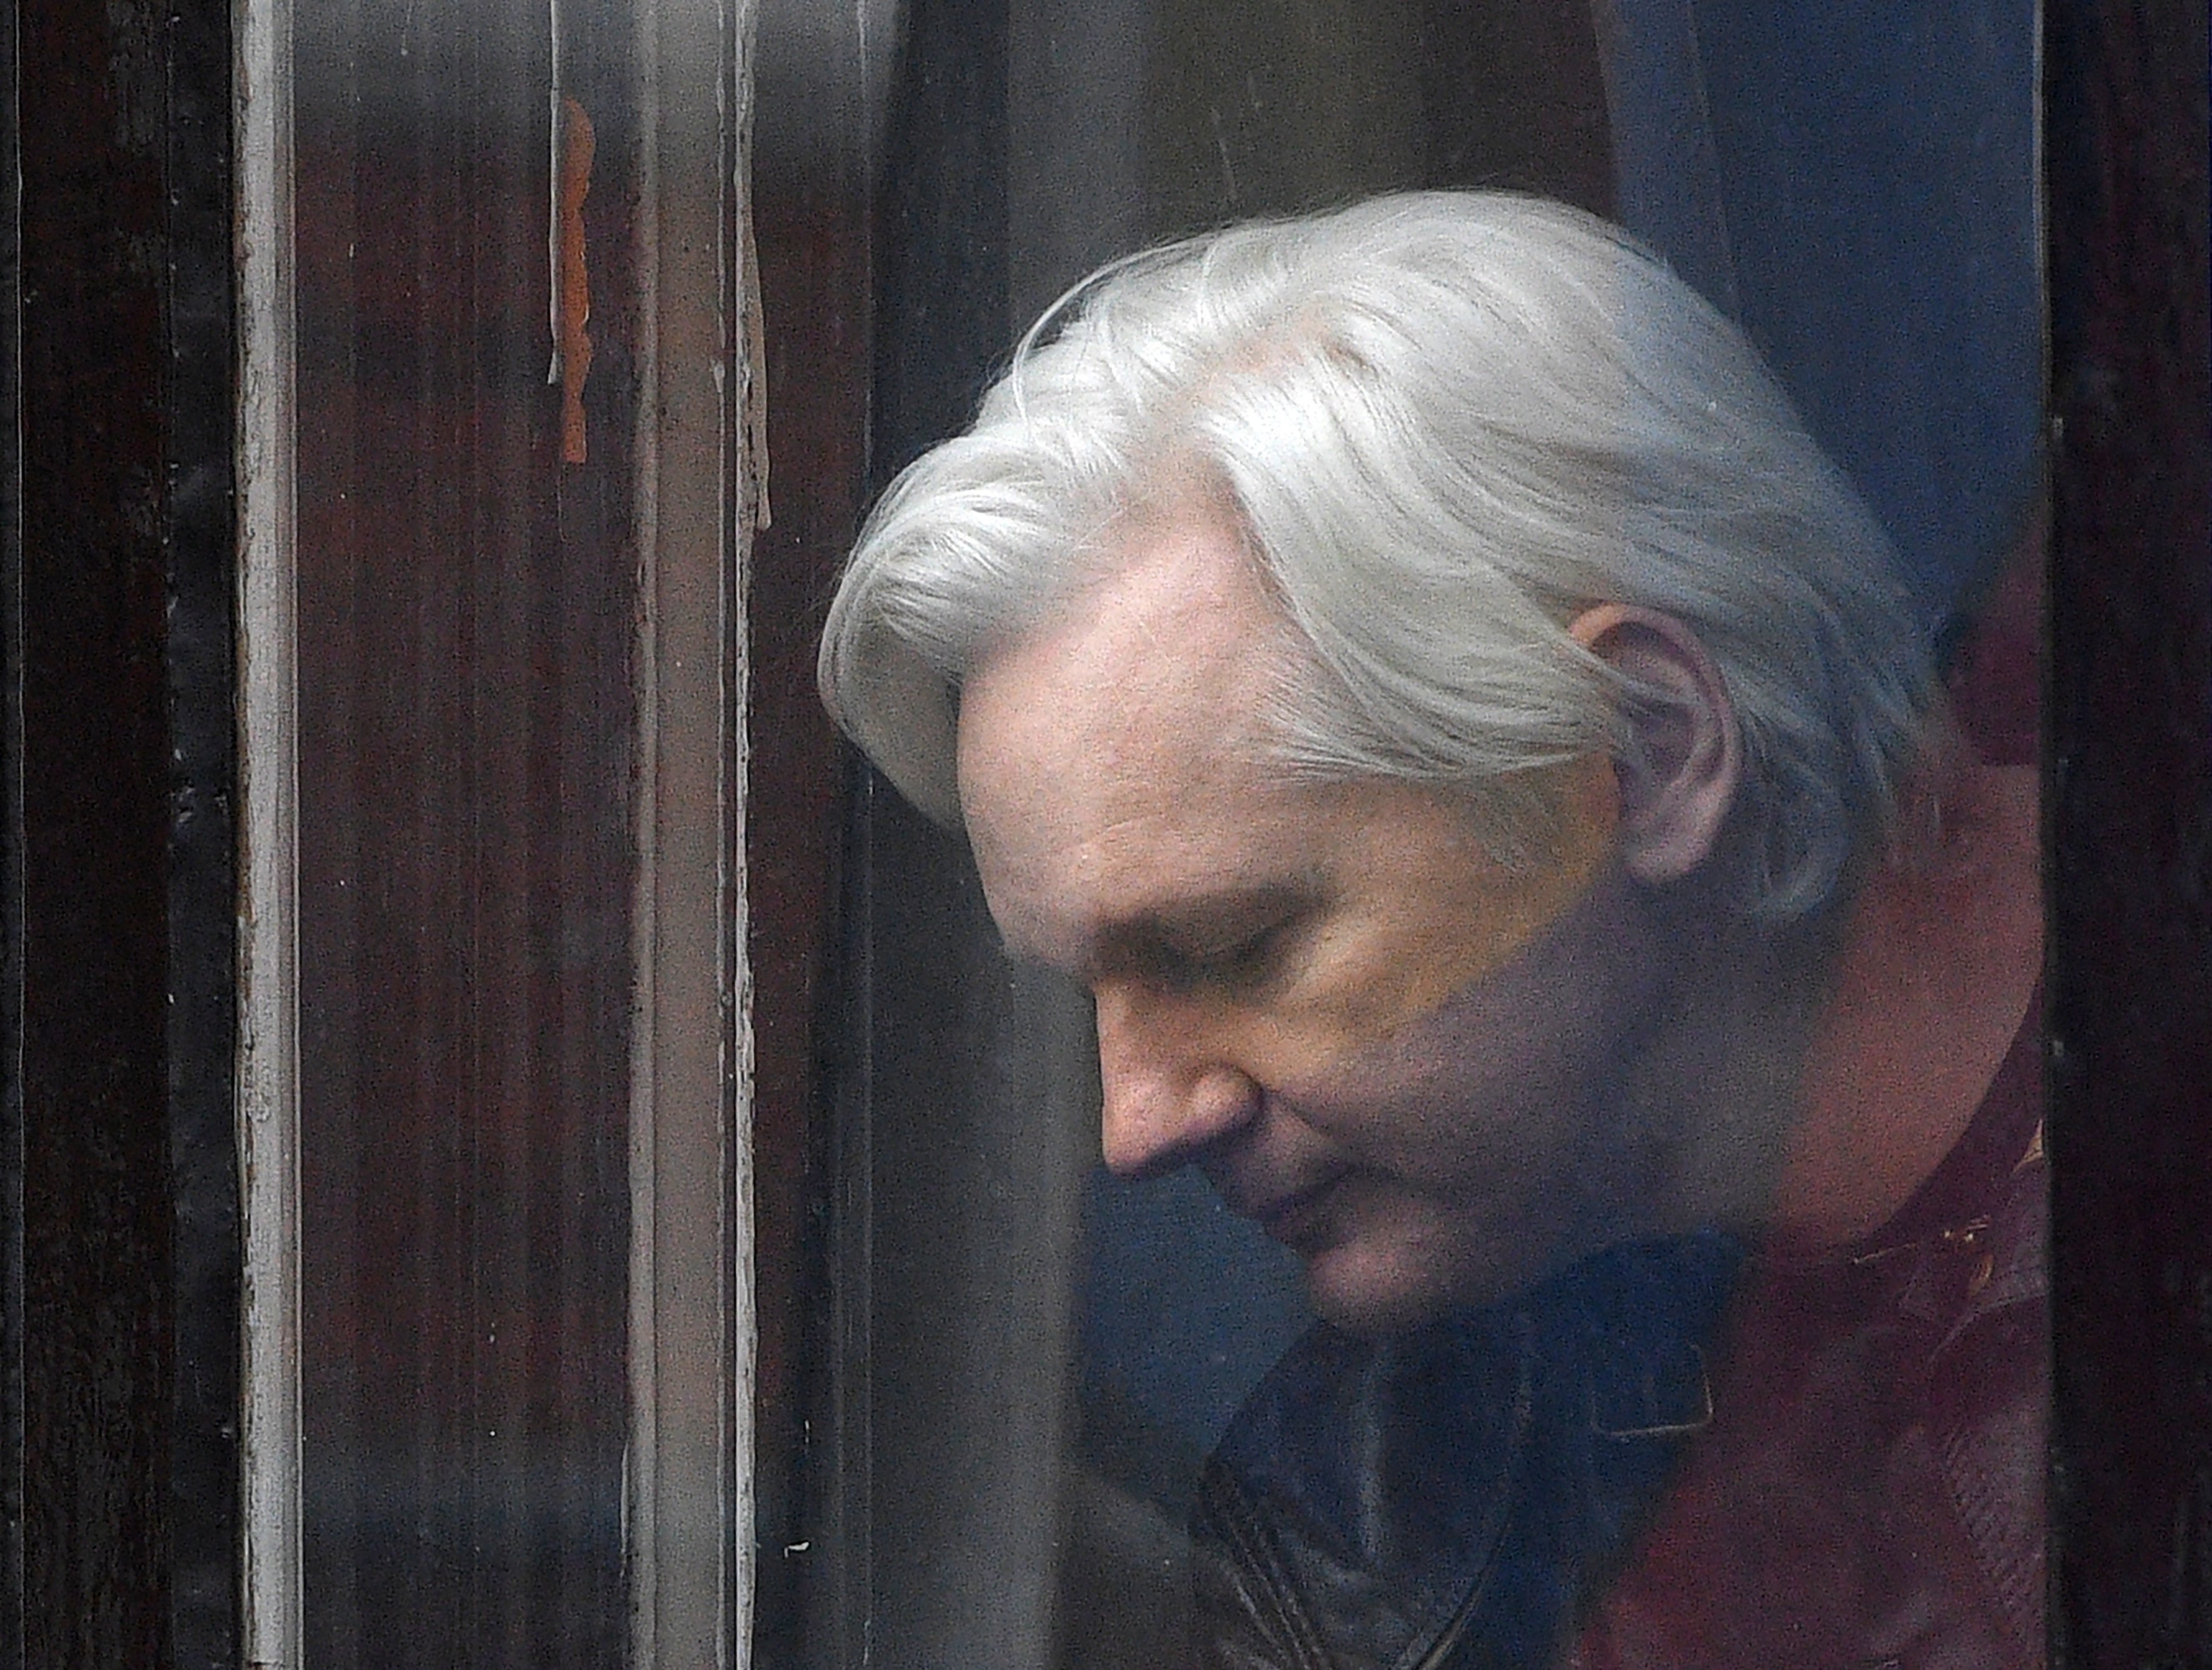 Un relator de la ONU pide a Trump que indulte a Assange